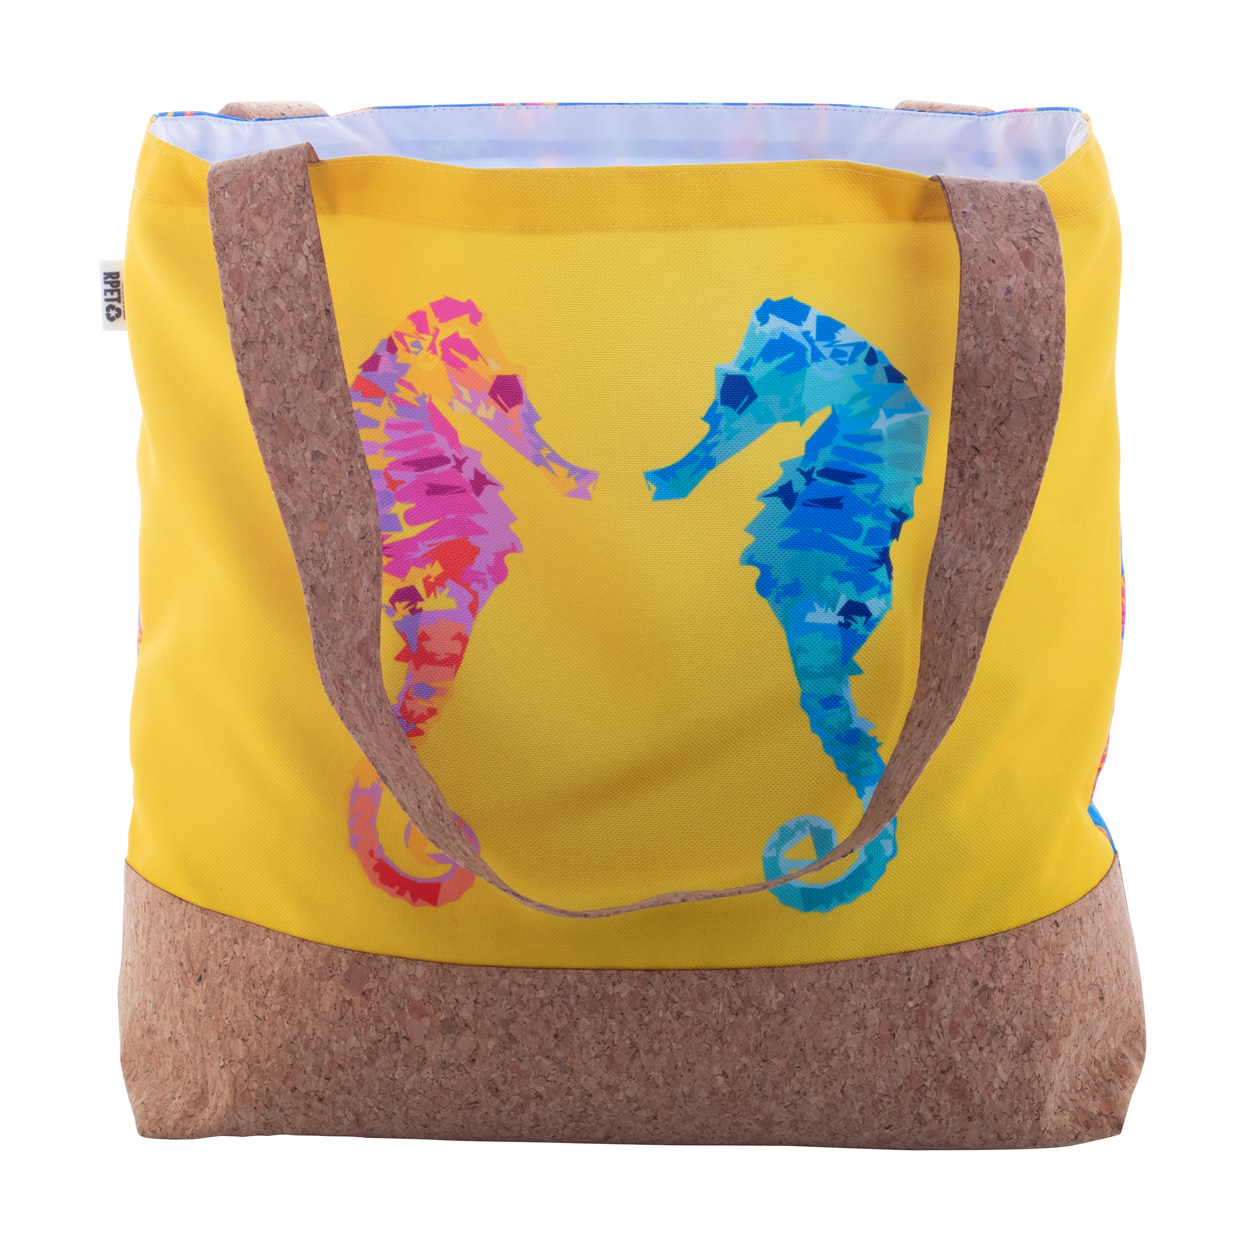 SuboShop Playa beach bag made to order - white